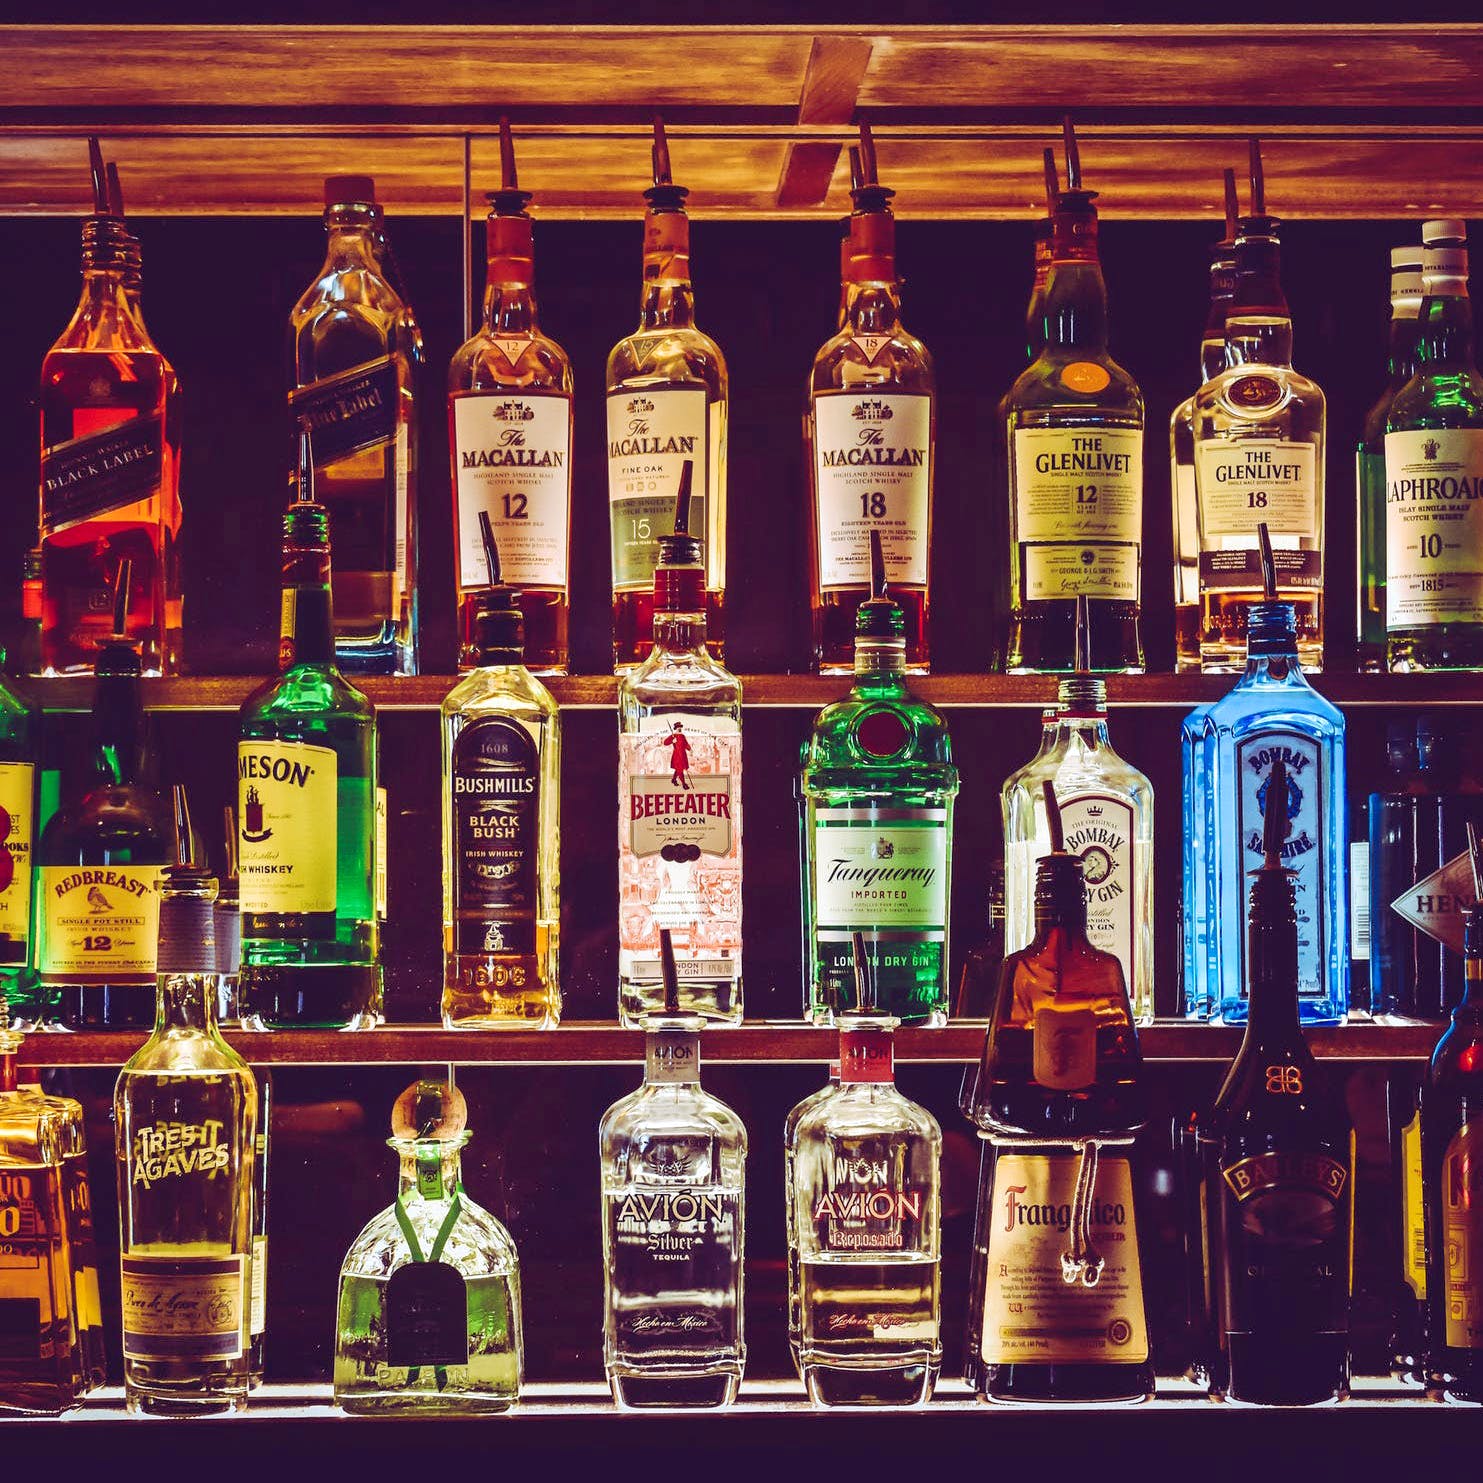 Bottle,Liqueur,Alcohol,Drink,Glass bottle,Distilled beverage,Alcoholic beverage,Whisky,Scotch whisky,Bar